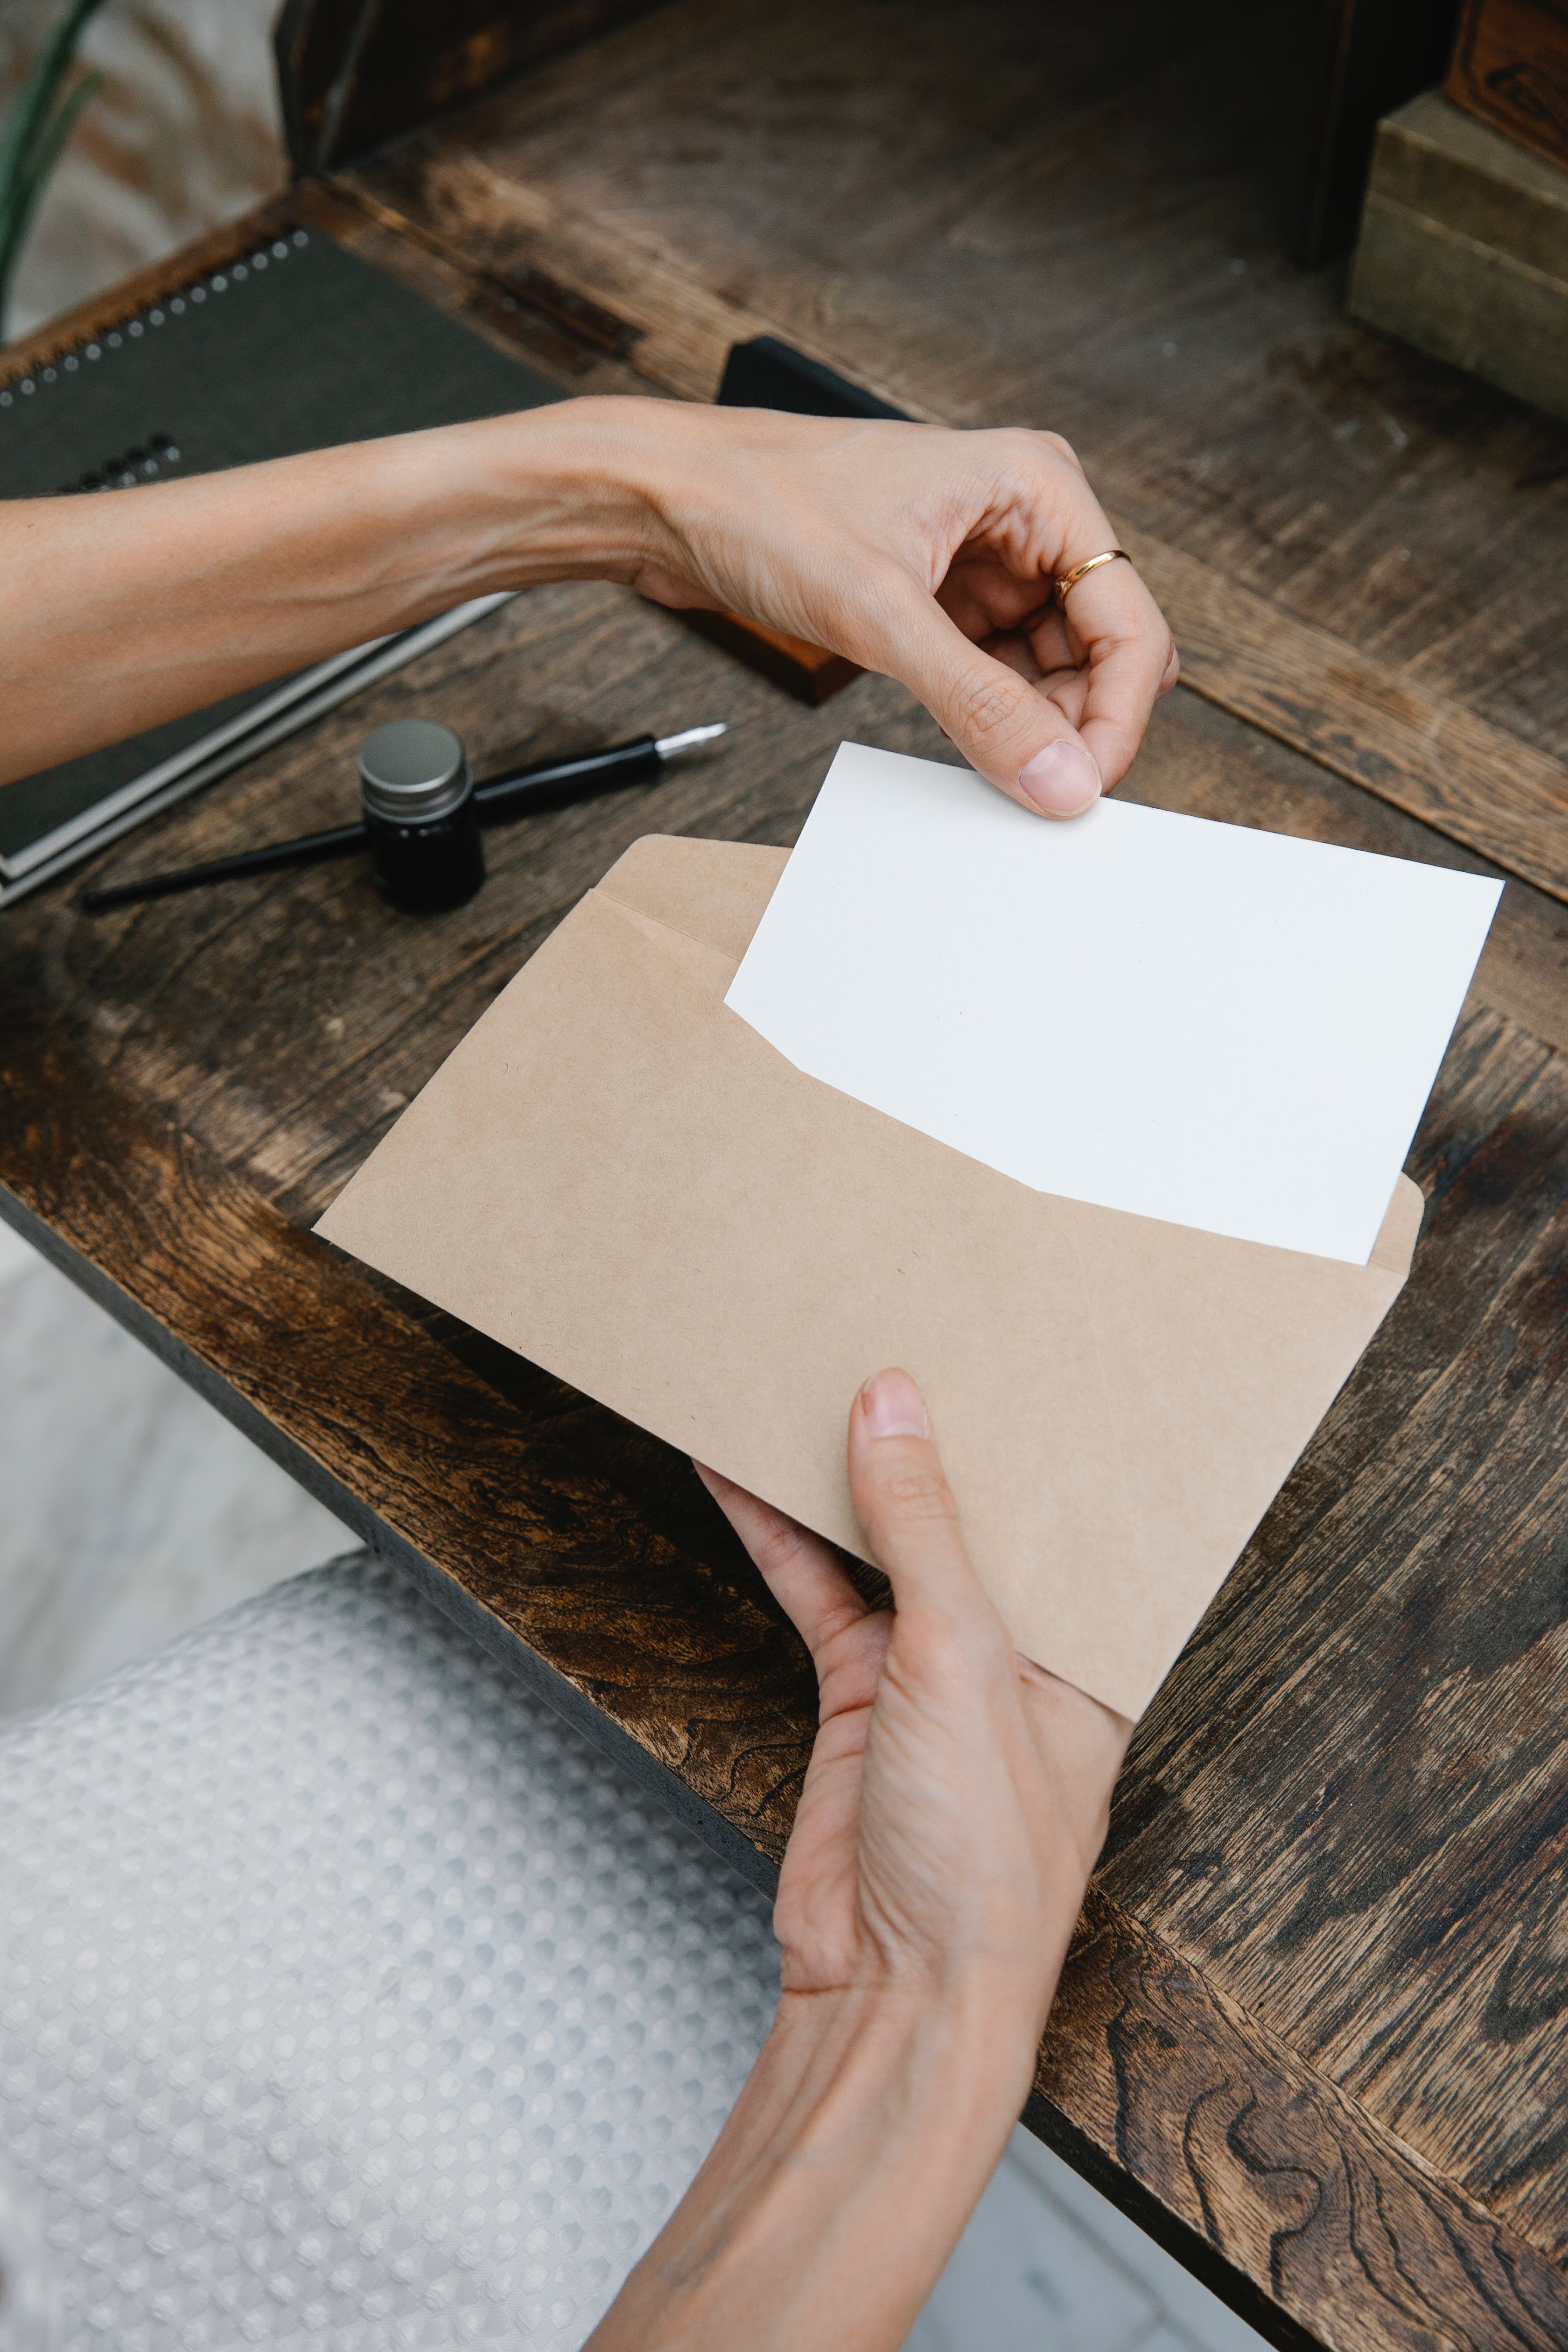 Une femme plaçant une feuille blanche dans une enveloppe | Source : Pexels